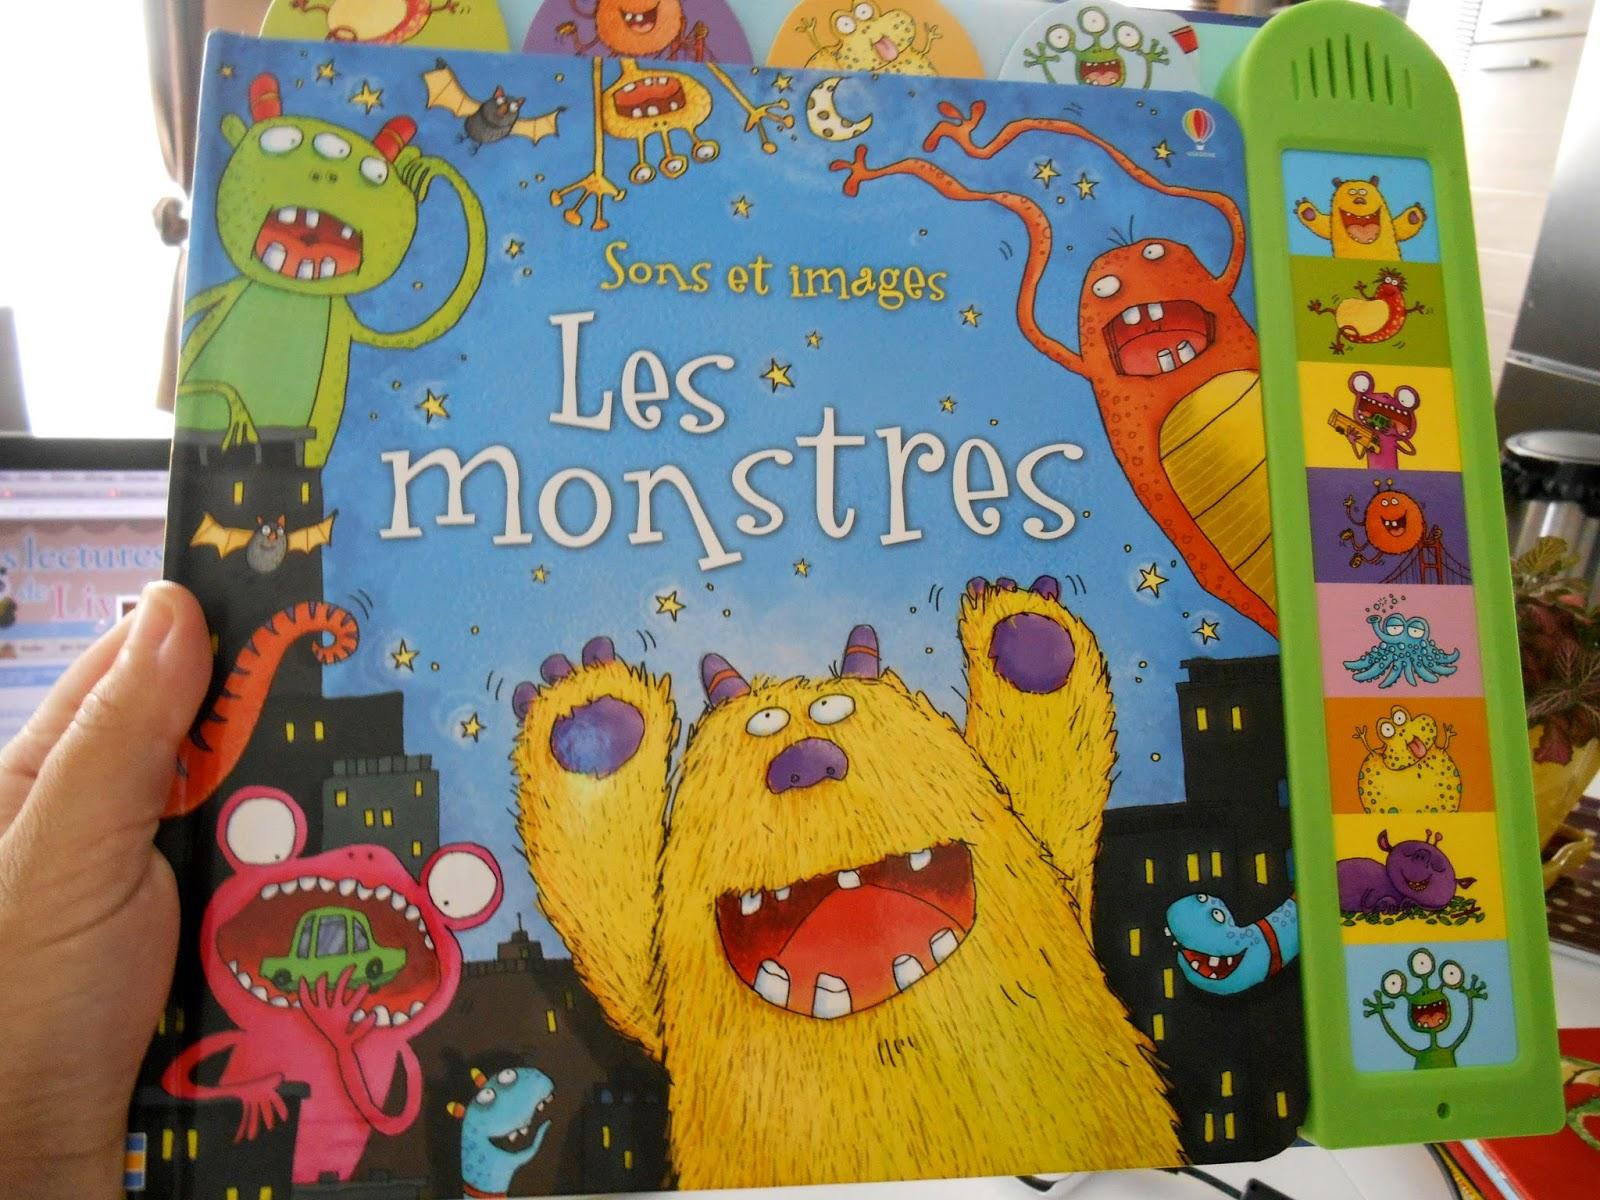 Les monstres en albums chez Usborne : Les monstres Collection Sons et images - Mon livre des gros monstres